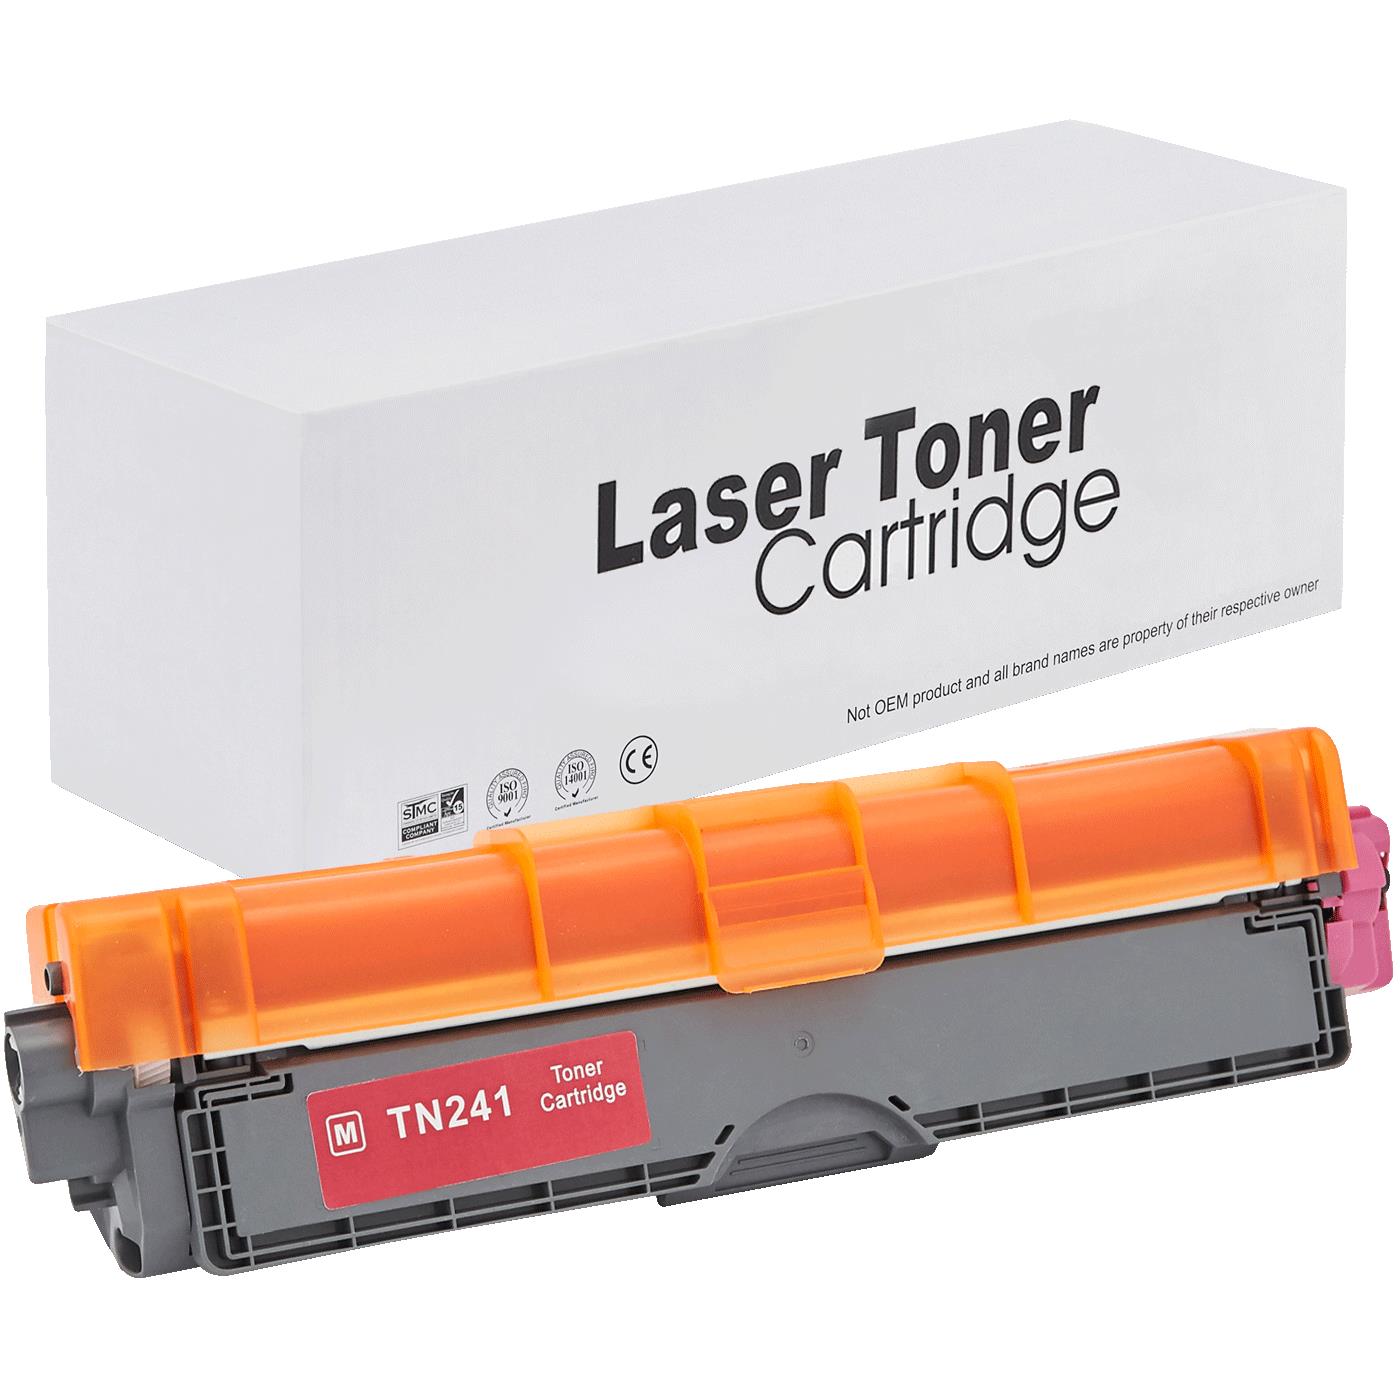 съвместима тонер касета за принтери и печатащи устройства на Brother MFC-9130 CW Toner BR-241M | TN241M. Ниски цени, прецизно изпълнение, високо качество.